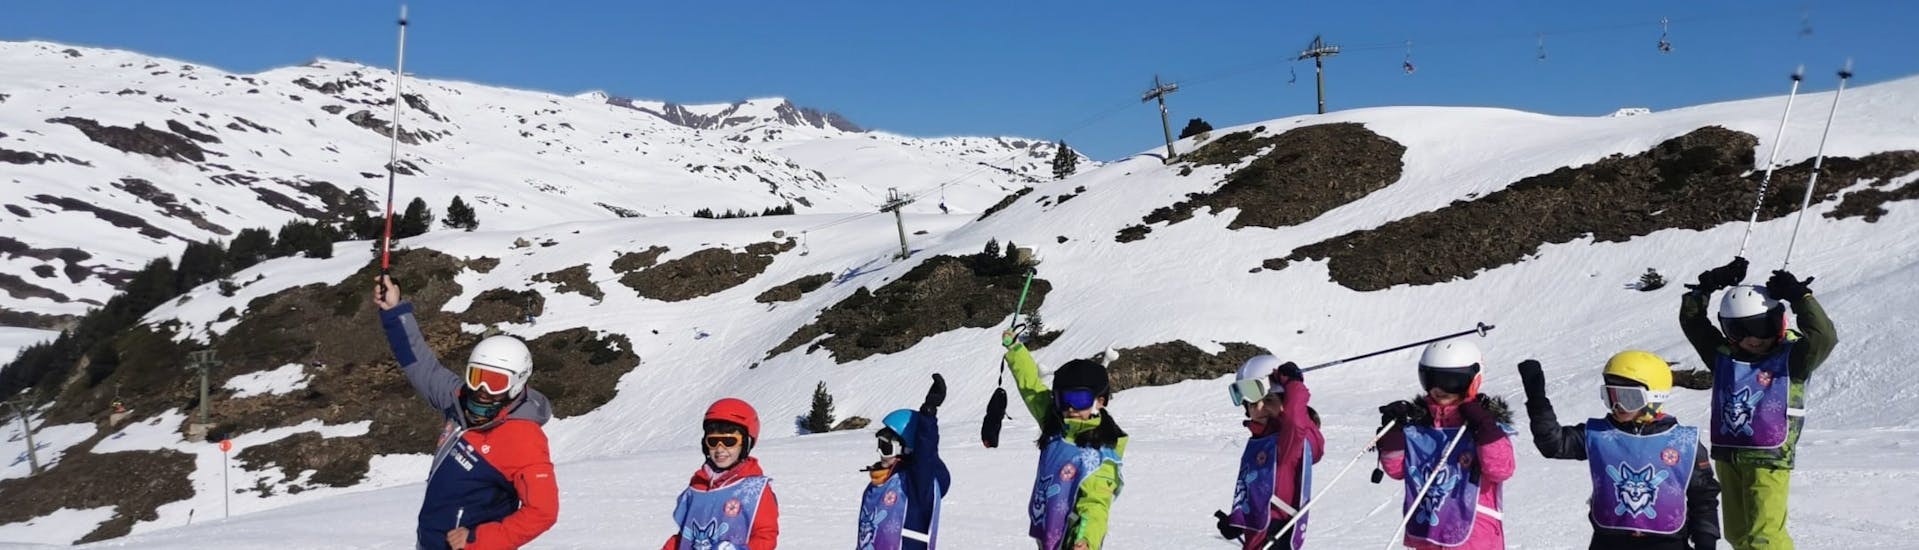 Clases de esquí para niños (4-16 años) de todos los niveles - Medio día.